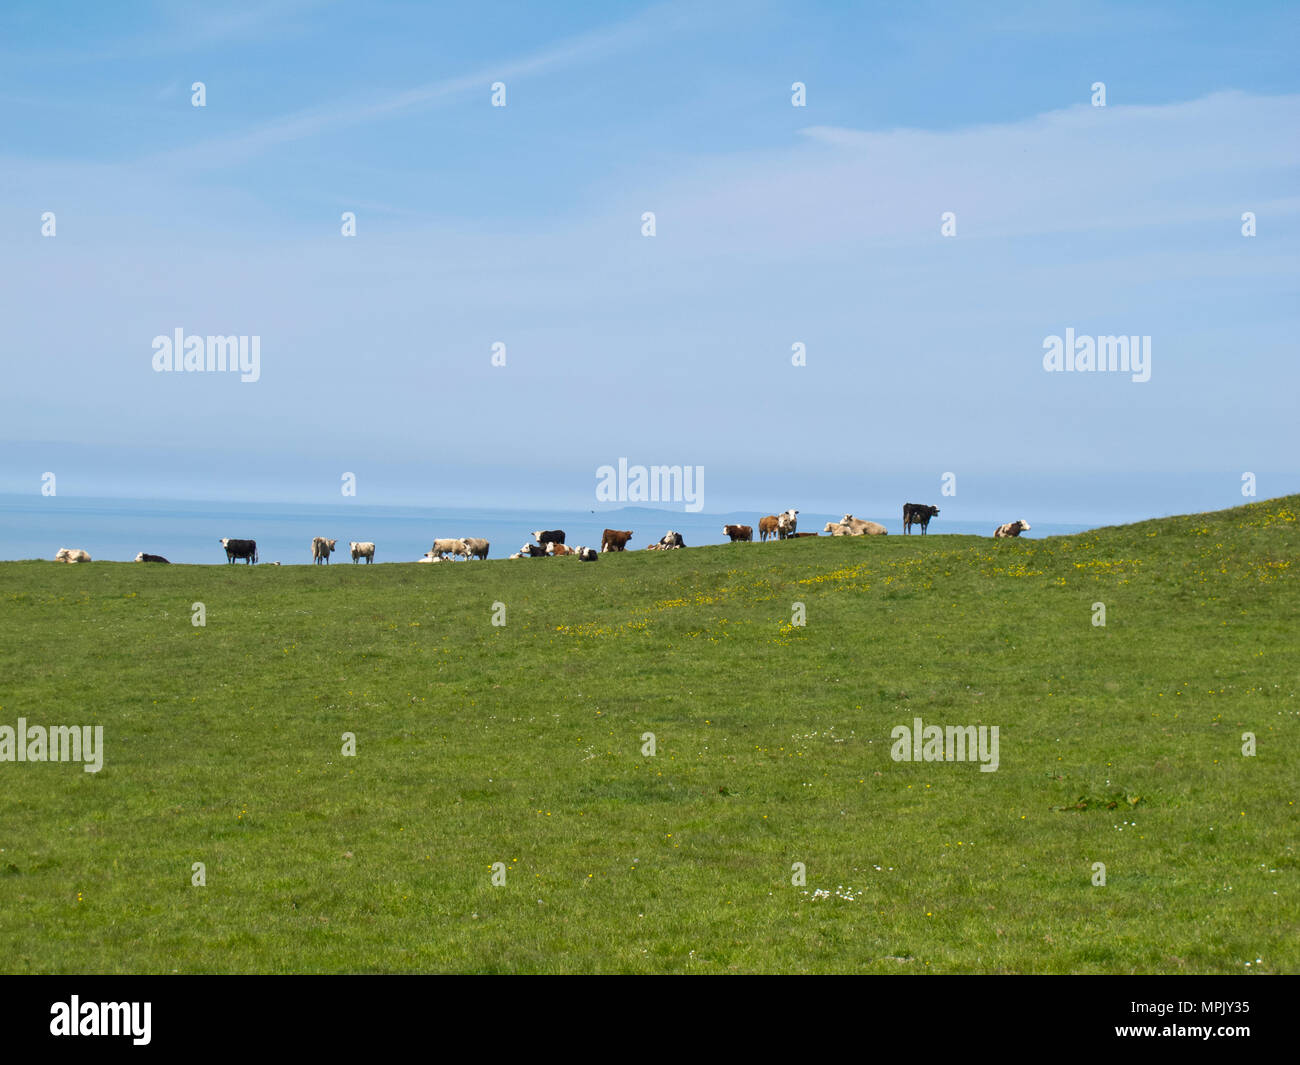 Troupeau de vaches sur des champs verts avec vue sur la mer au loin sous le soleil d'été Banque D'Images